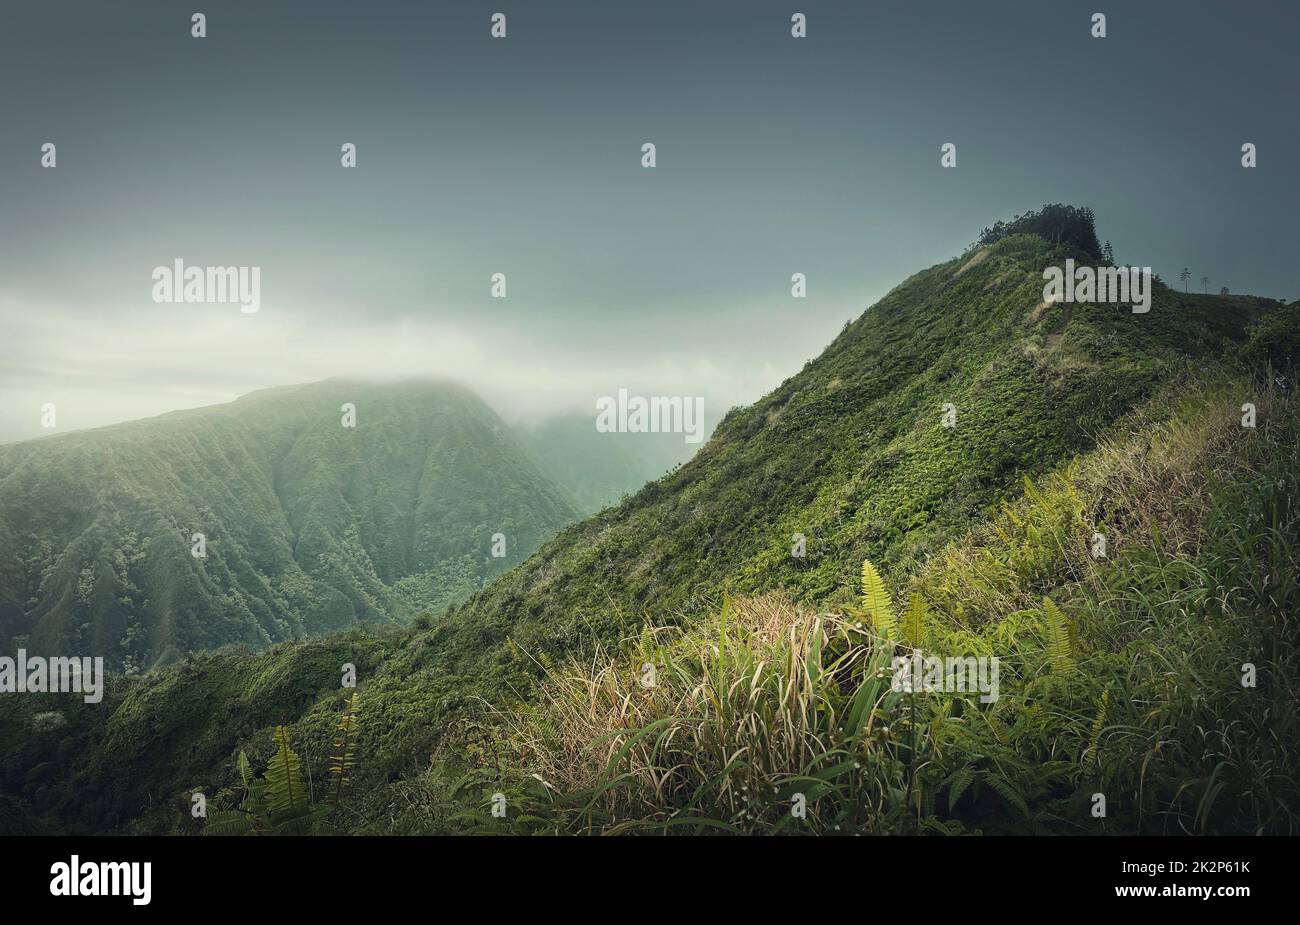 Wunderschöne Aussicht auf die grünen Hügel auf Hawaii, Insel Oahu. Wanderlandschaft in den Bergen mit lebhafter tropischer Vegetation. Mürrisches Wetter mit nebligen Wolken über dem Tal Stockfoto